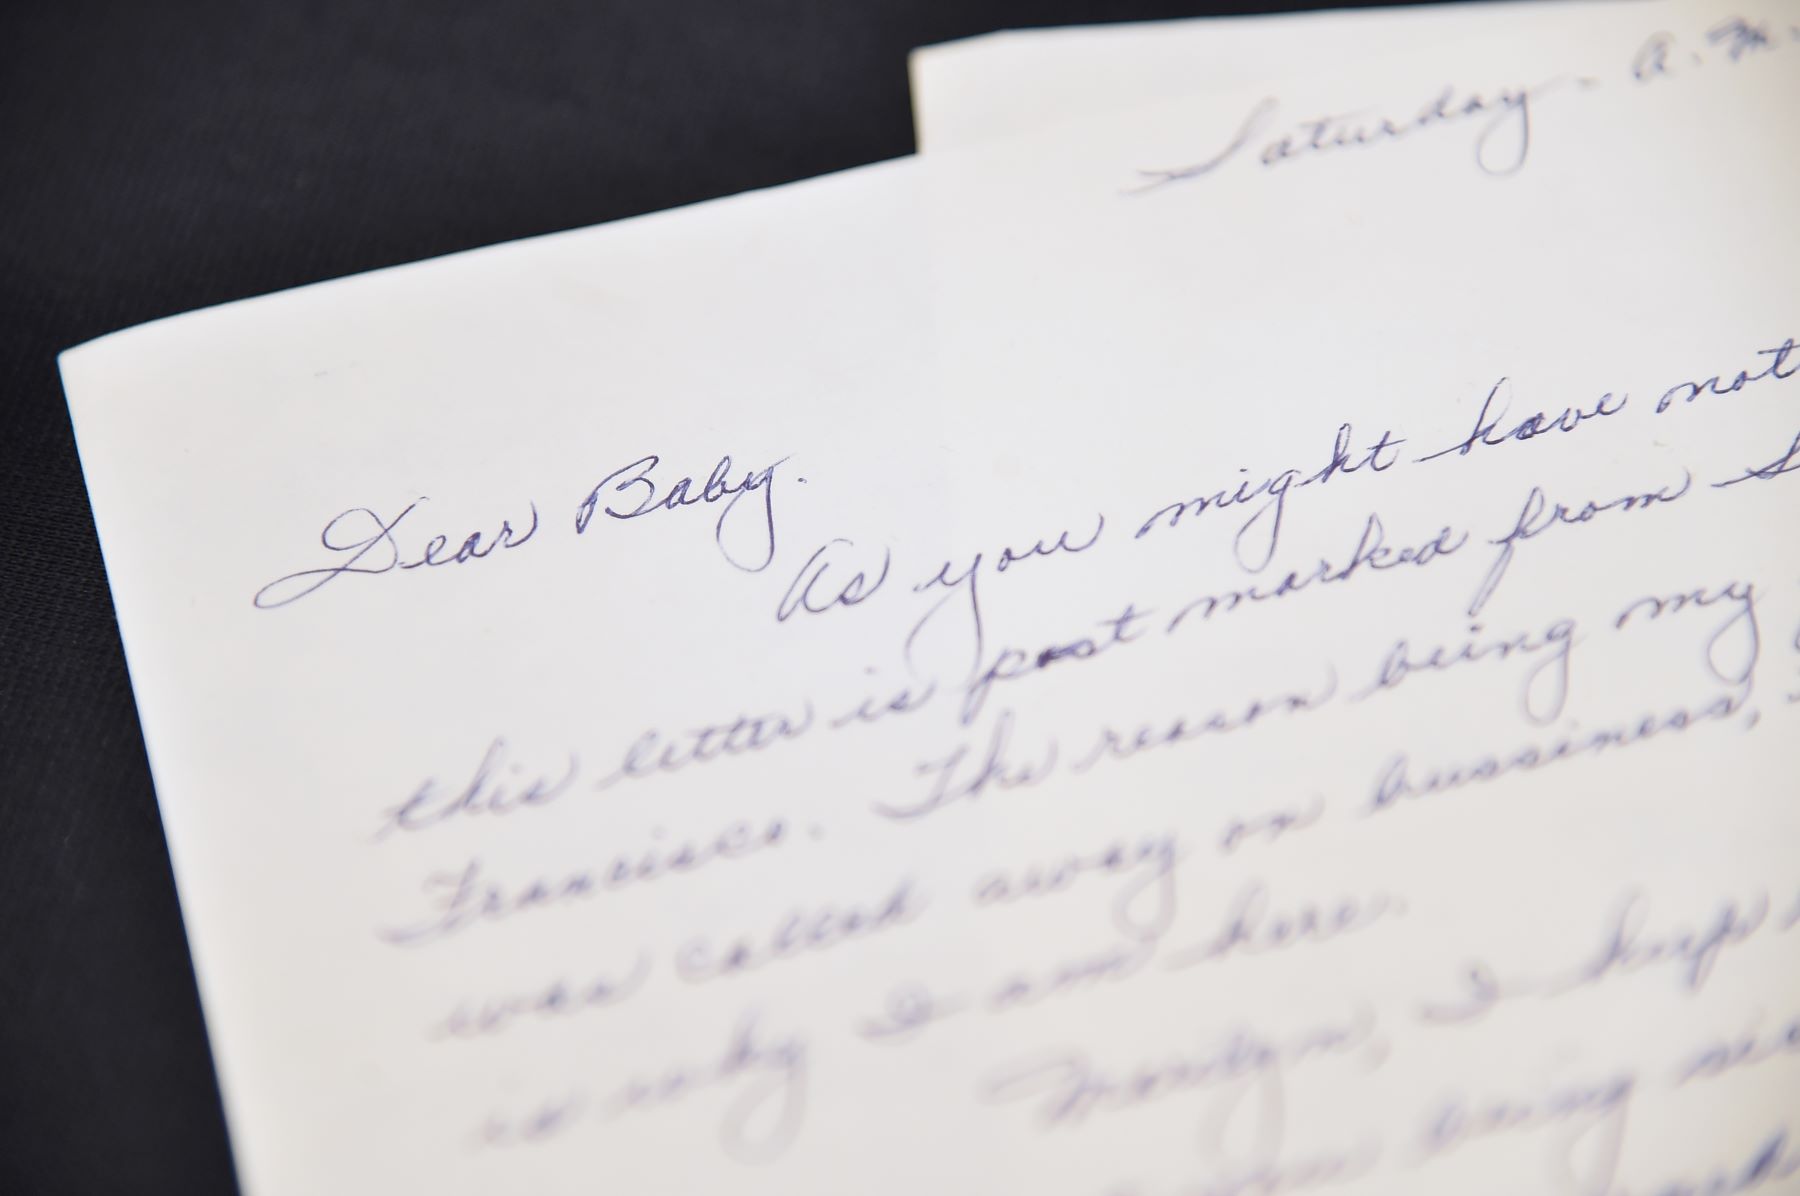 A love letter written by John DiMaggio for Marilyn Monroe